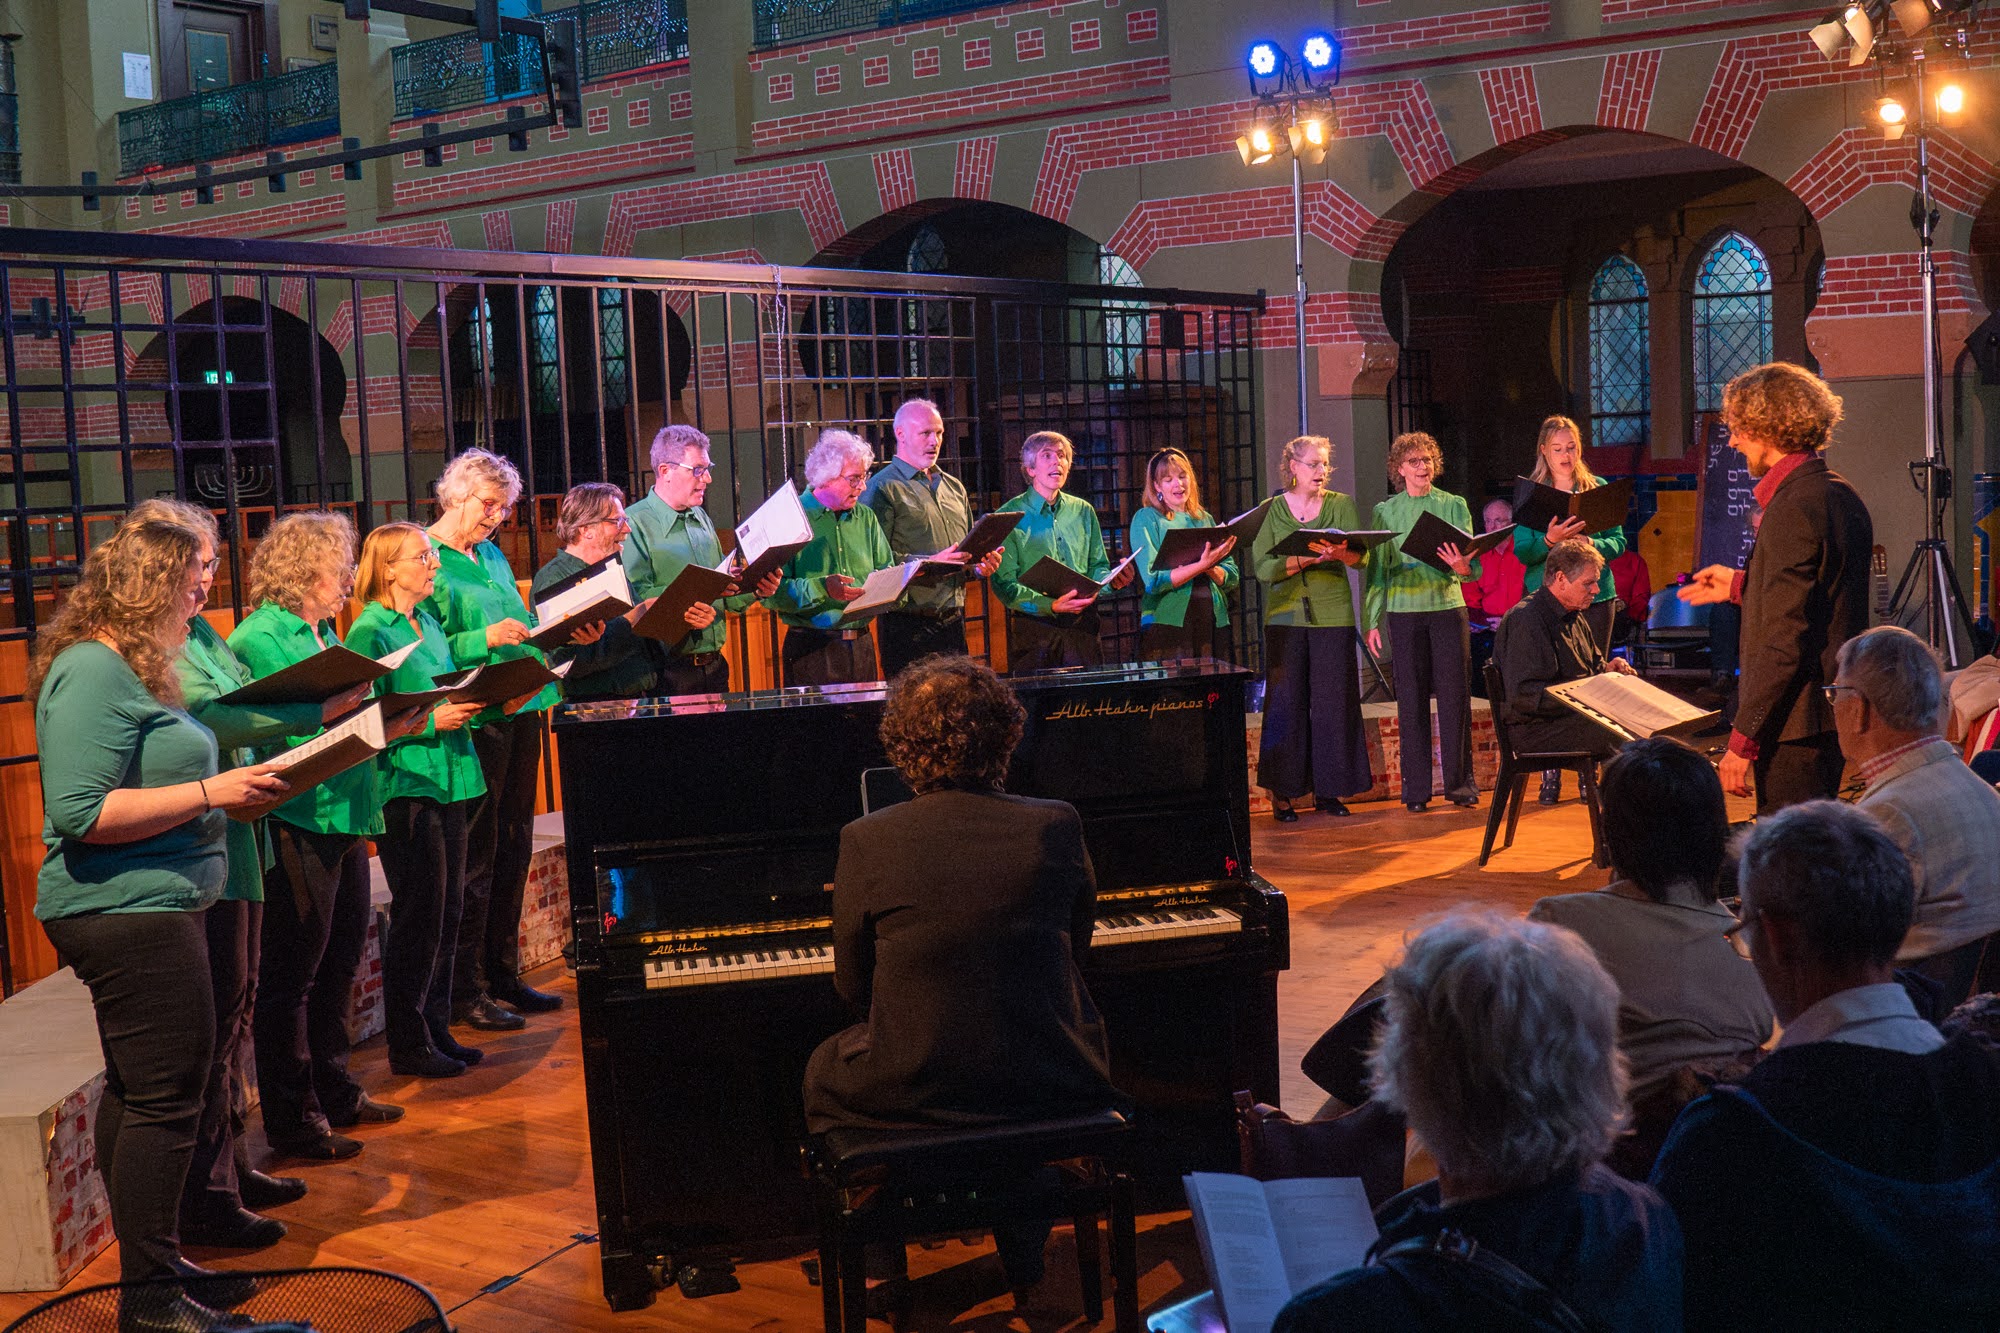 STEK-koorleden in groene kleding zingen